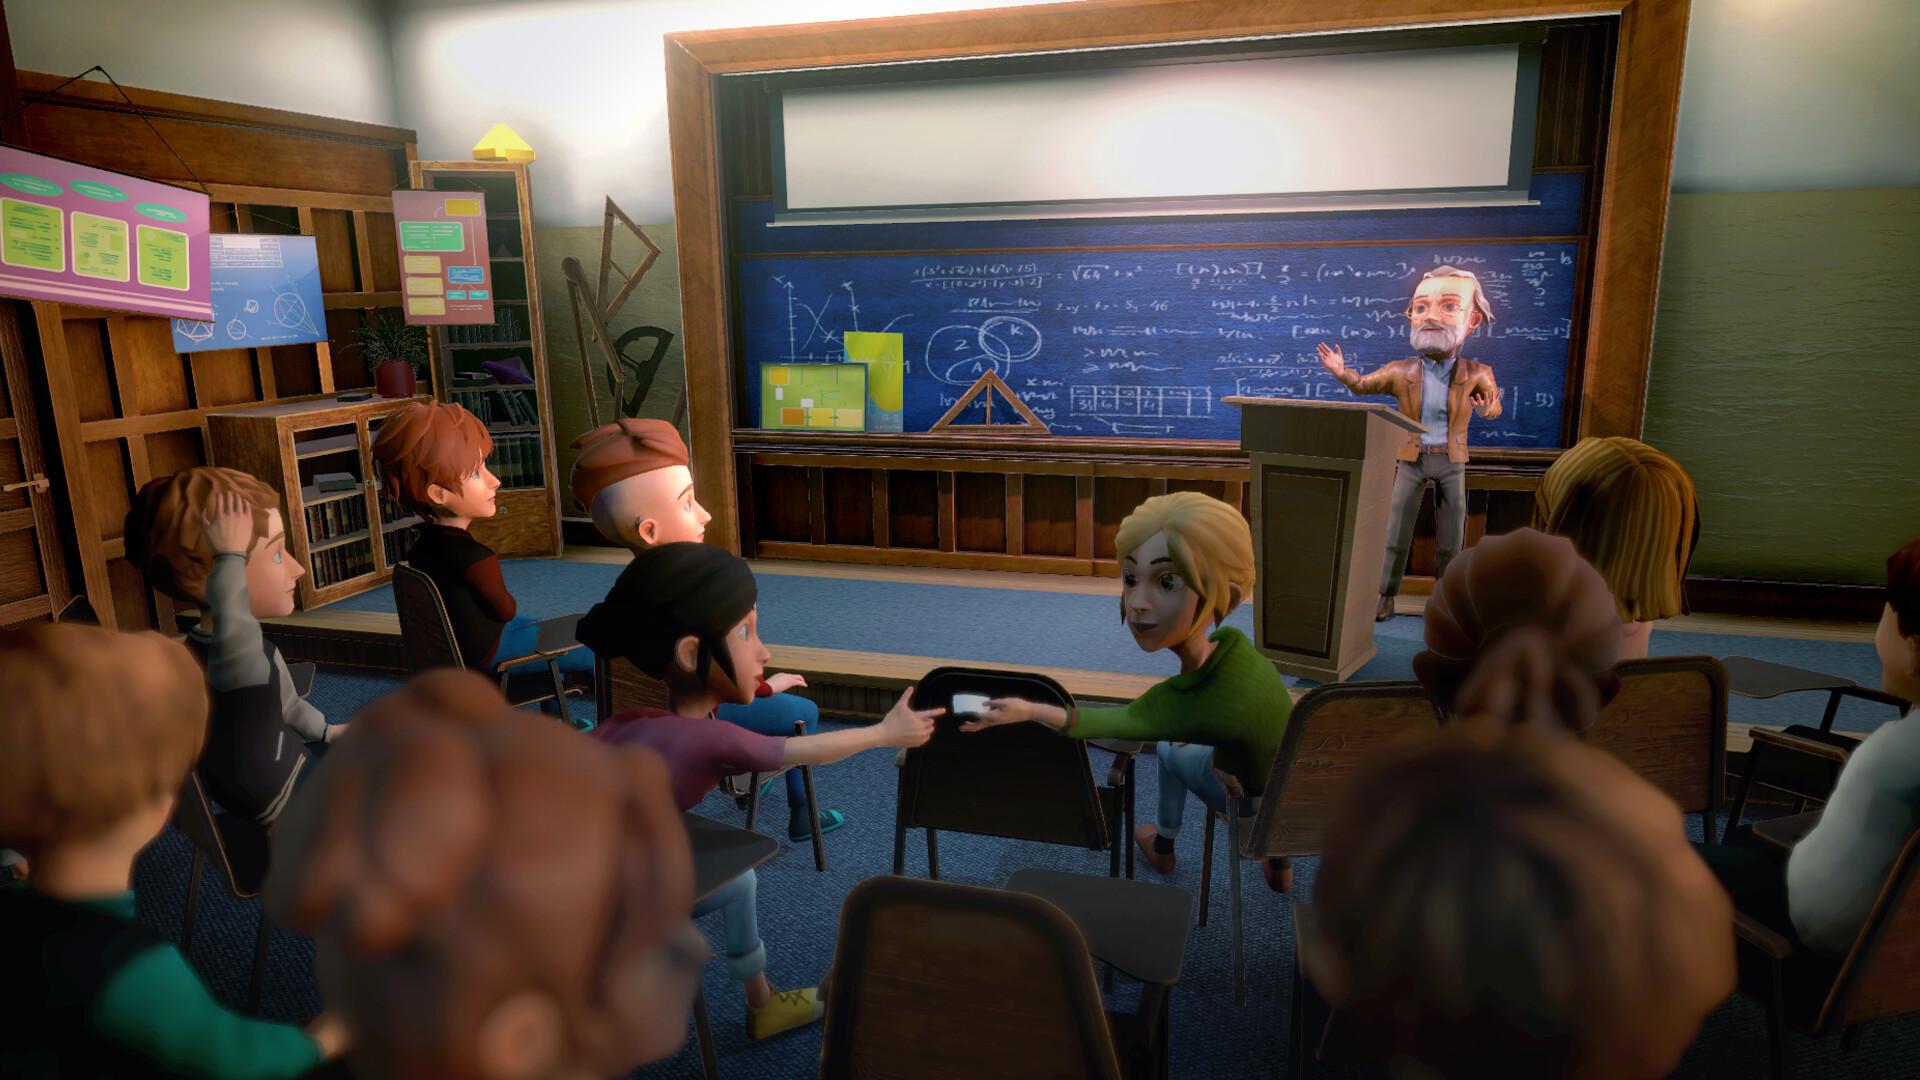 沉浸式模拟游戏《校园生活》现已登录Steam平台 6月推出试玩版